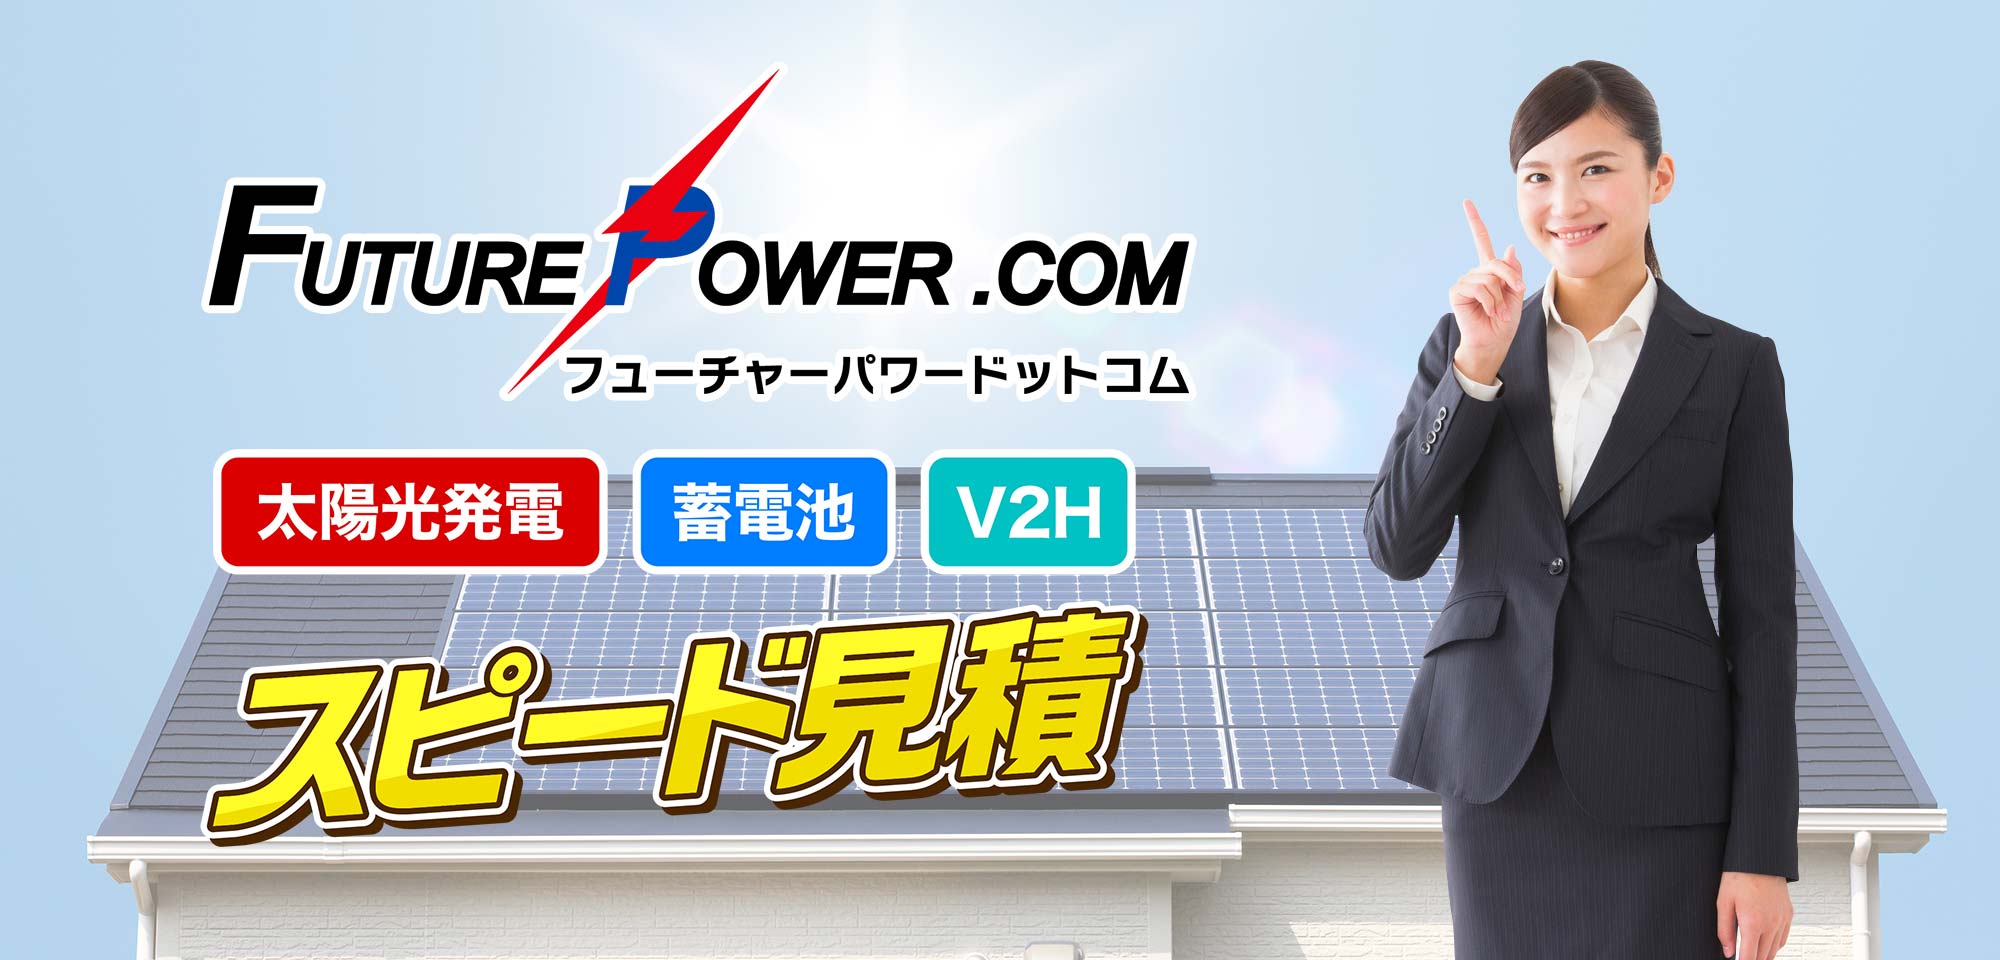 太陽光・蓄電池・V2Hはフューチャーパワー.com